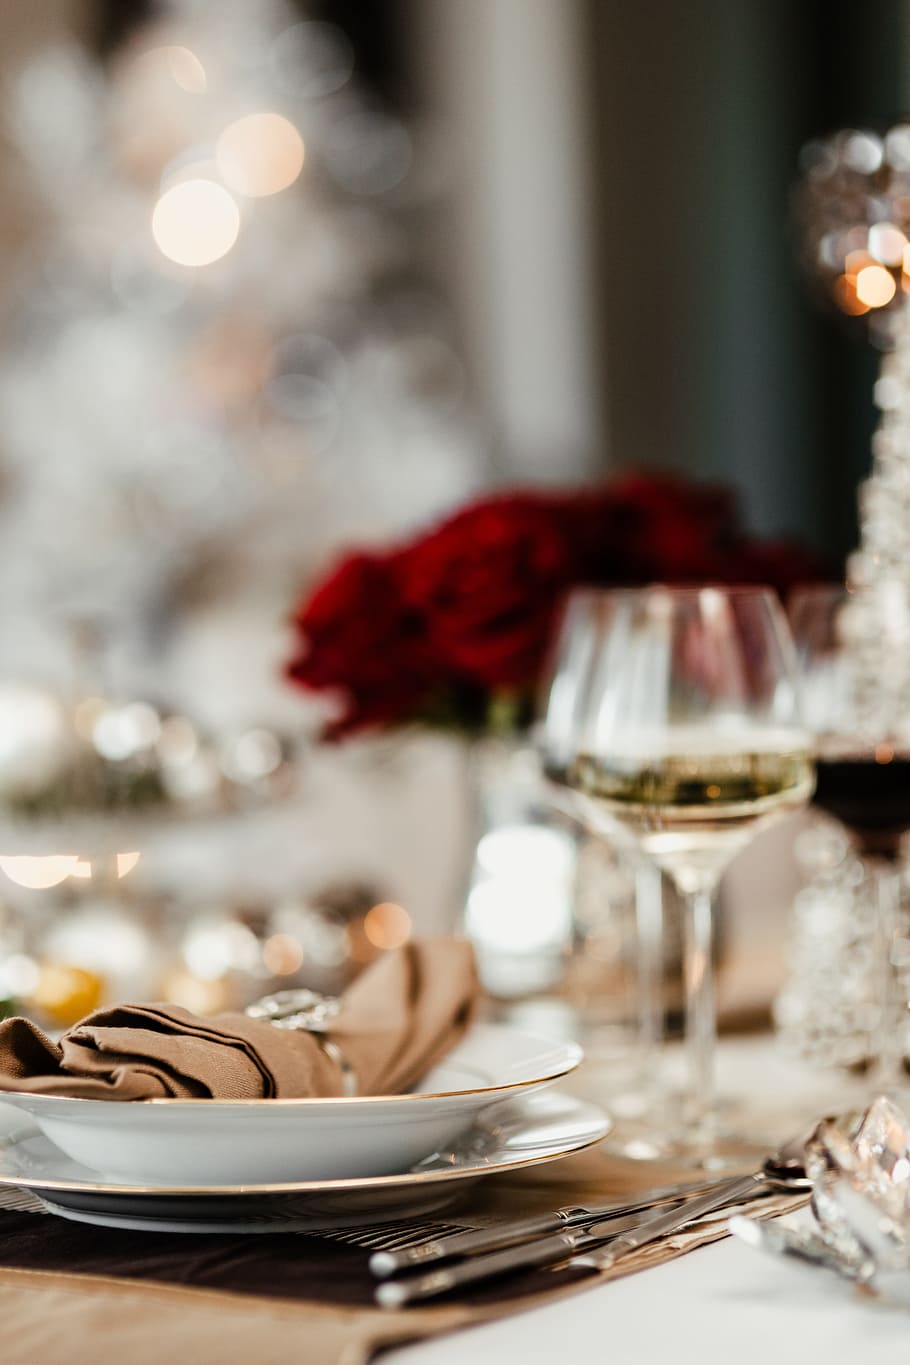 plata decoraciones de navidad, navidad, plata, decoraciones, nochebuena, comedor, copa de vino, comida y bebida, vidrio, plato